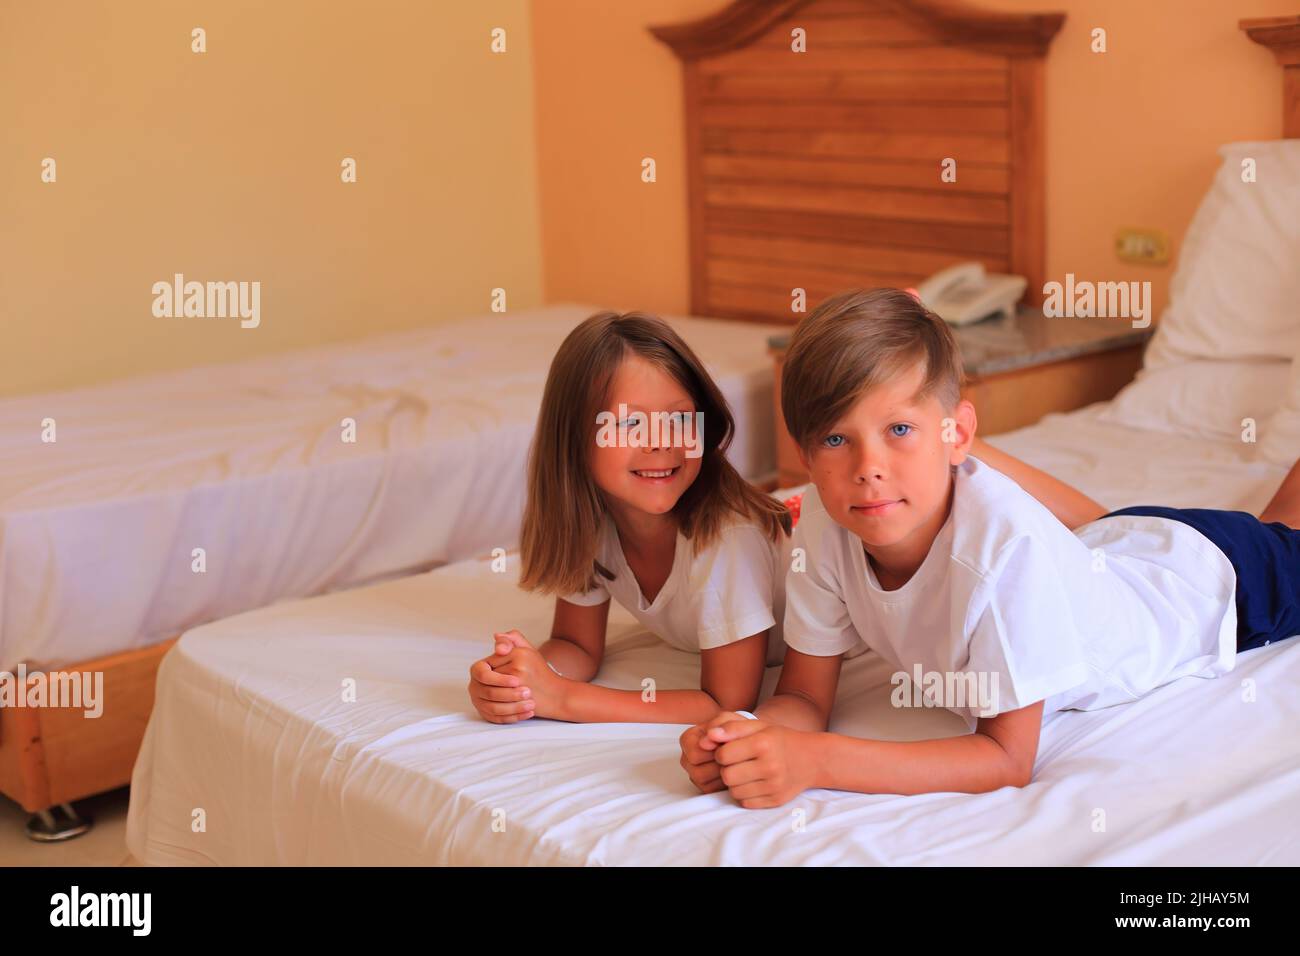 En vacances, deux enfants s'étendent sur un lit avec des draps blancs dans une chambre d'hôtel. Les enfants jouent sur le lit avec des draps blancs à la maison. Garçon et fille avant d'aller au lit à la maison Banque D'Images